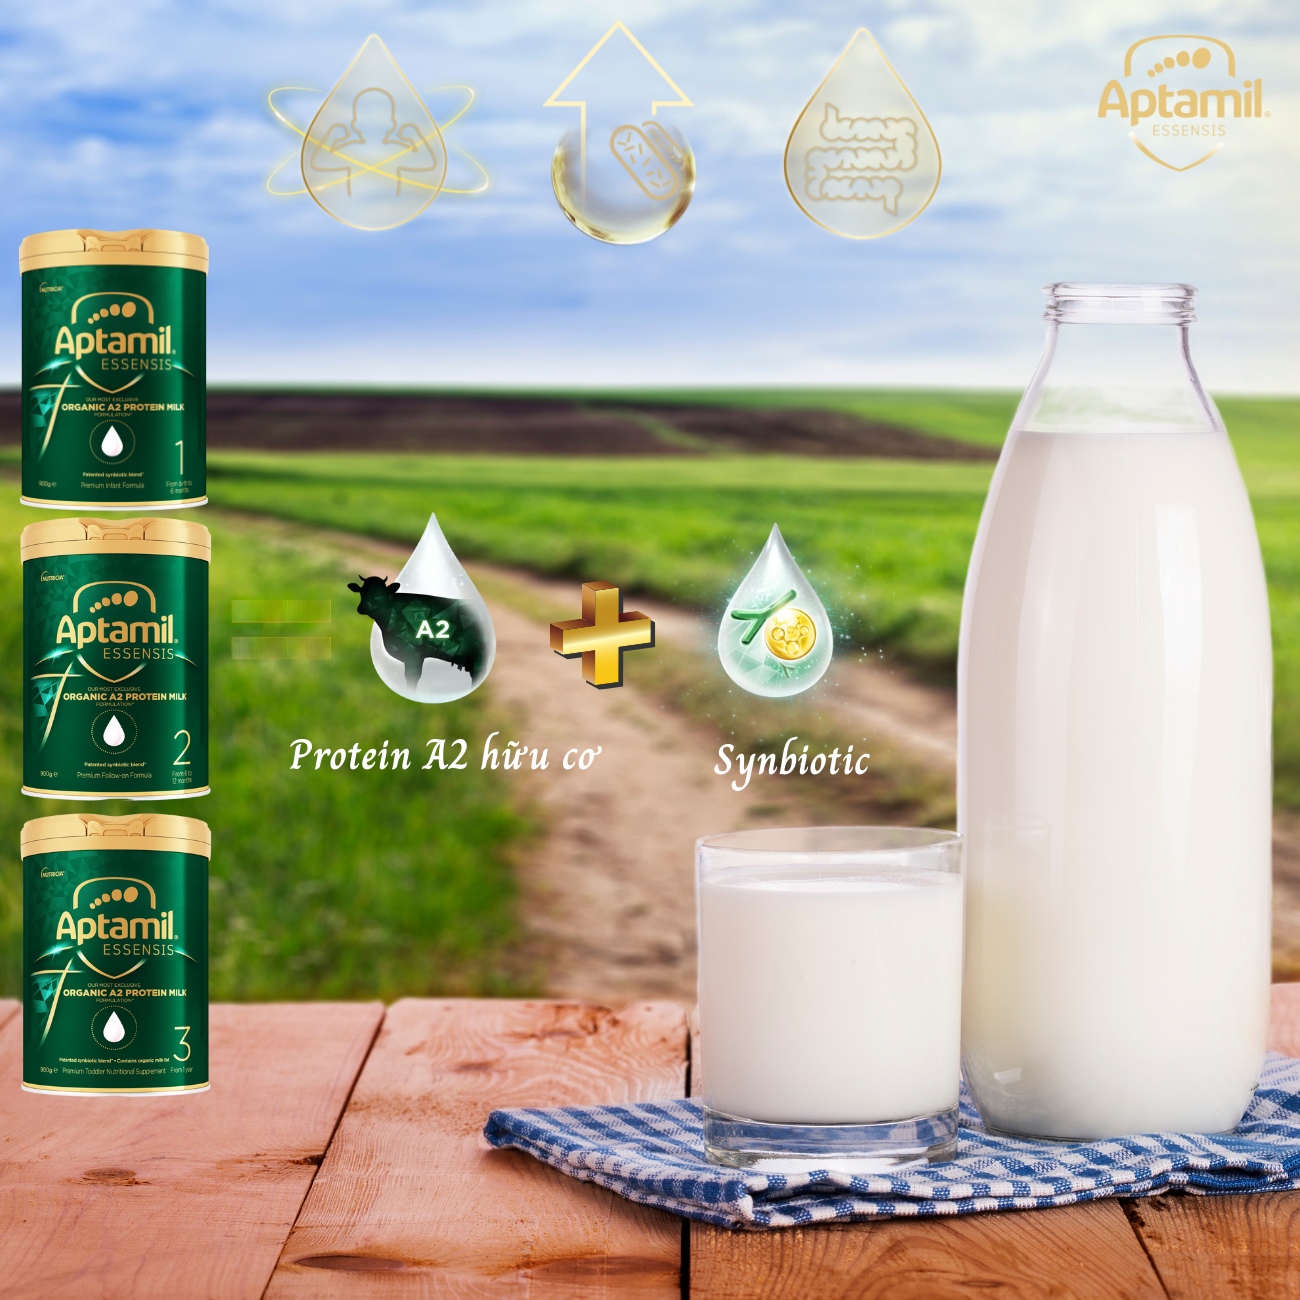 Sữa Tăng Cân Cho Bé Từ 6 Đến 12 Tháng Aptamil Essensis